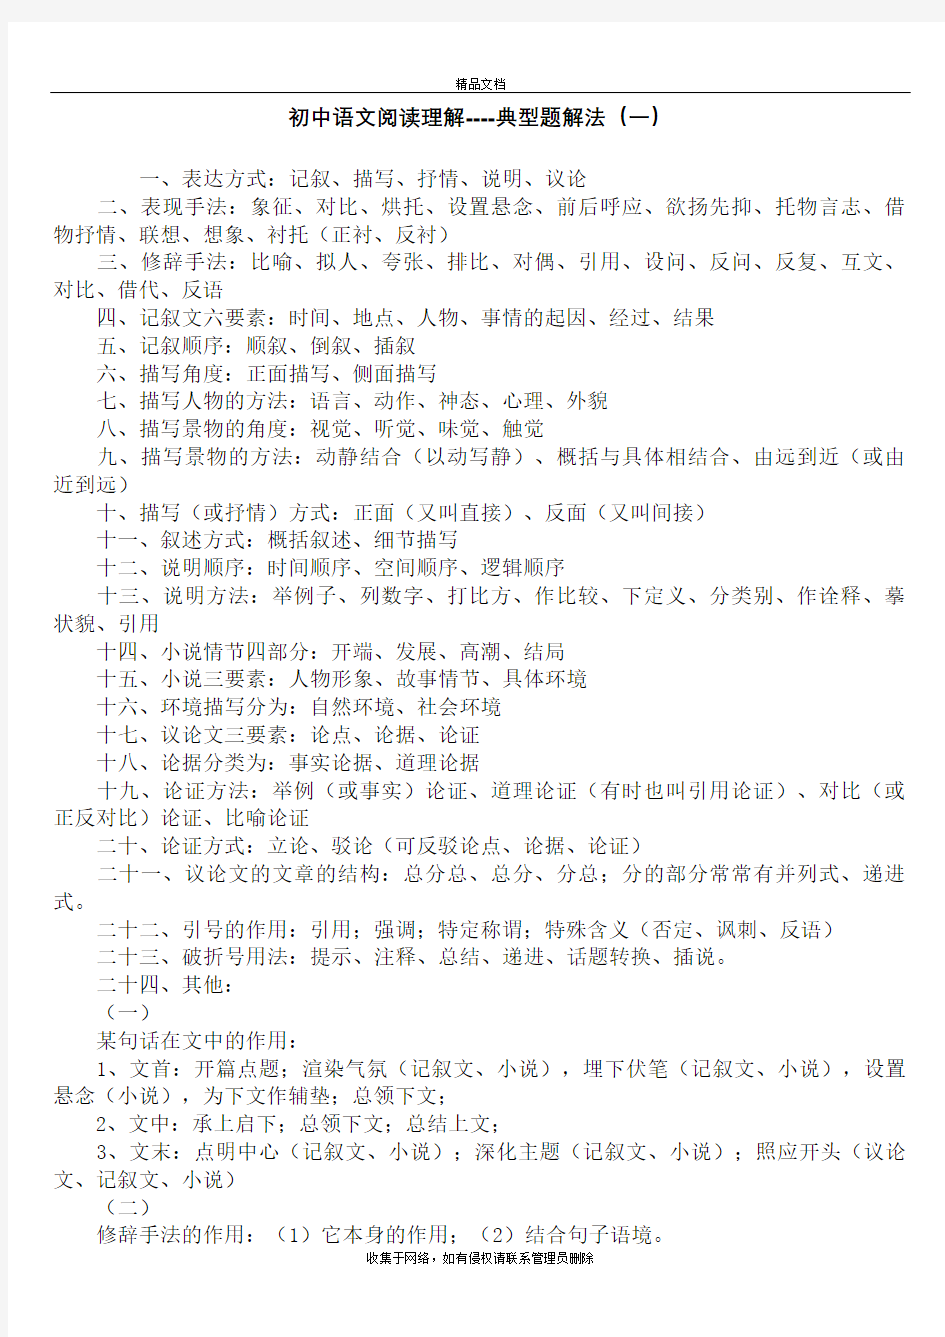 初中语文阅读理解整理及答题技巧汇总教学文案